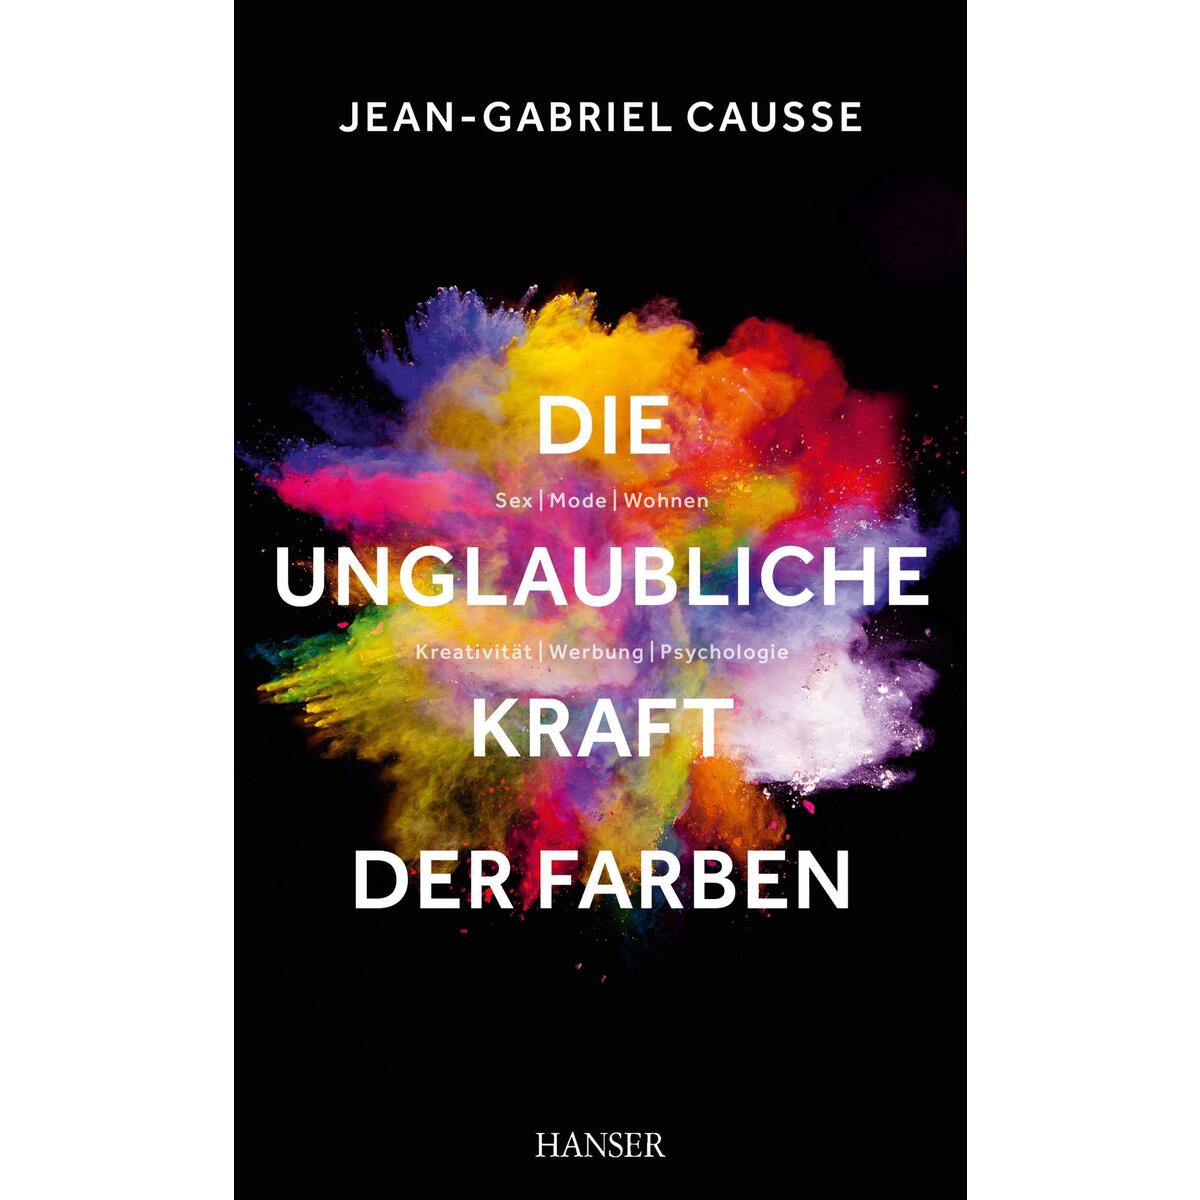 Die unglaubliche Kraft der Farben von Carl Hanser Verlag